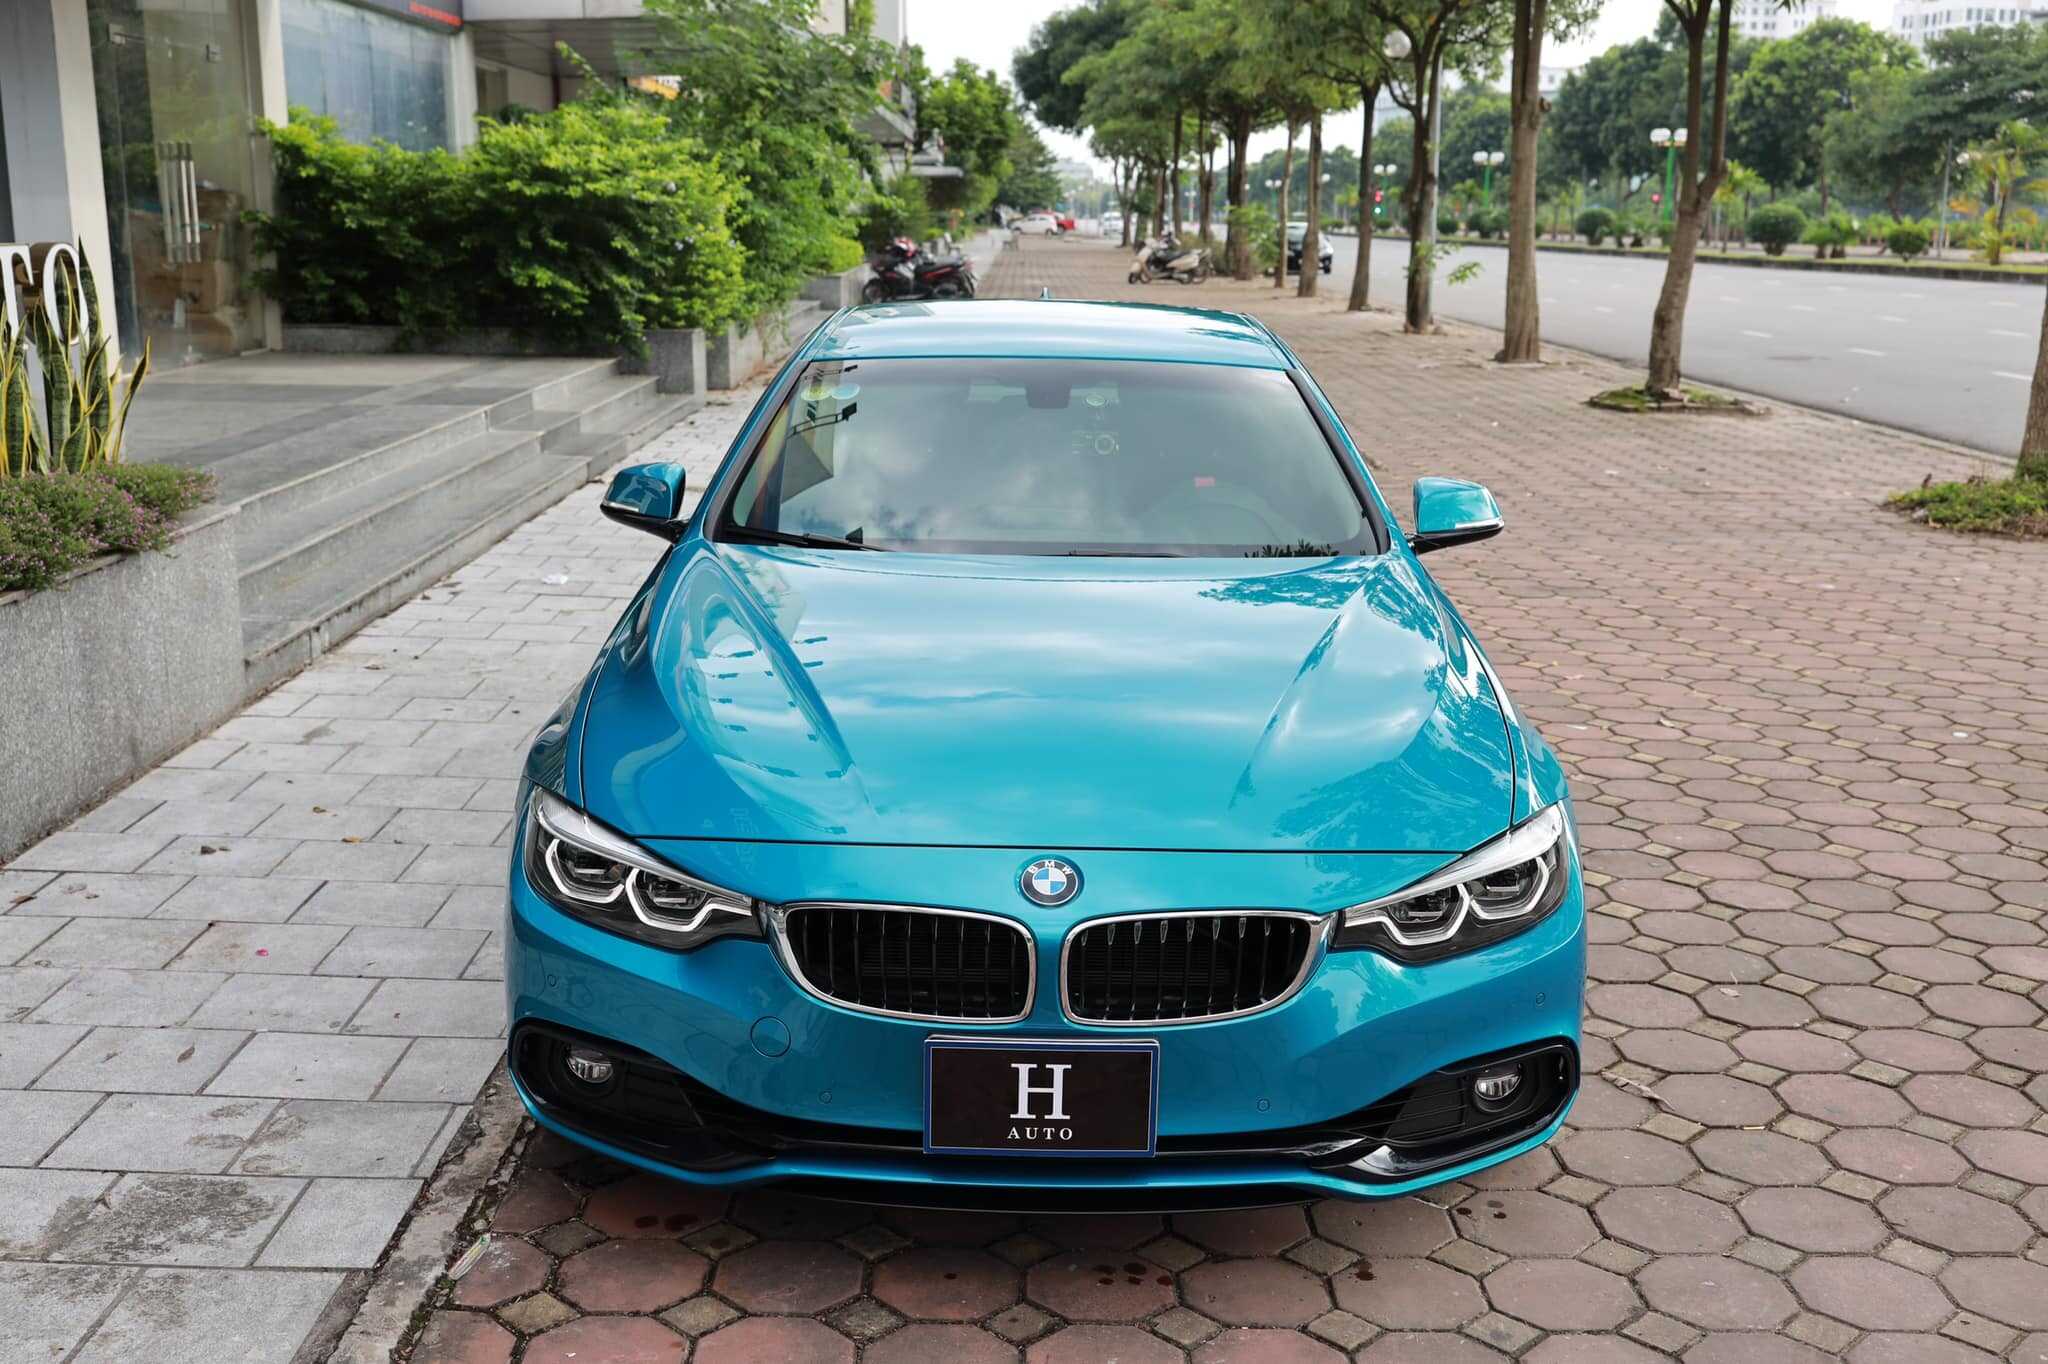 BMW 420i Gran Coupe 2018 đăng ký 2021 lăn bánh 15000km  H Auto  Chuyên  Mua  Bán  Ký Gửi các dòng xe Lướt đã qua sử dụng